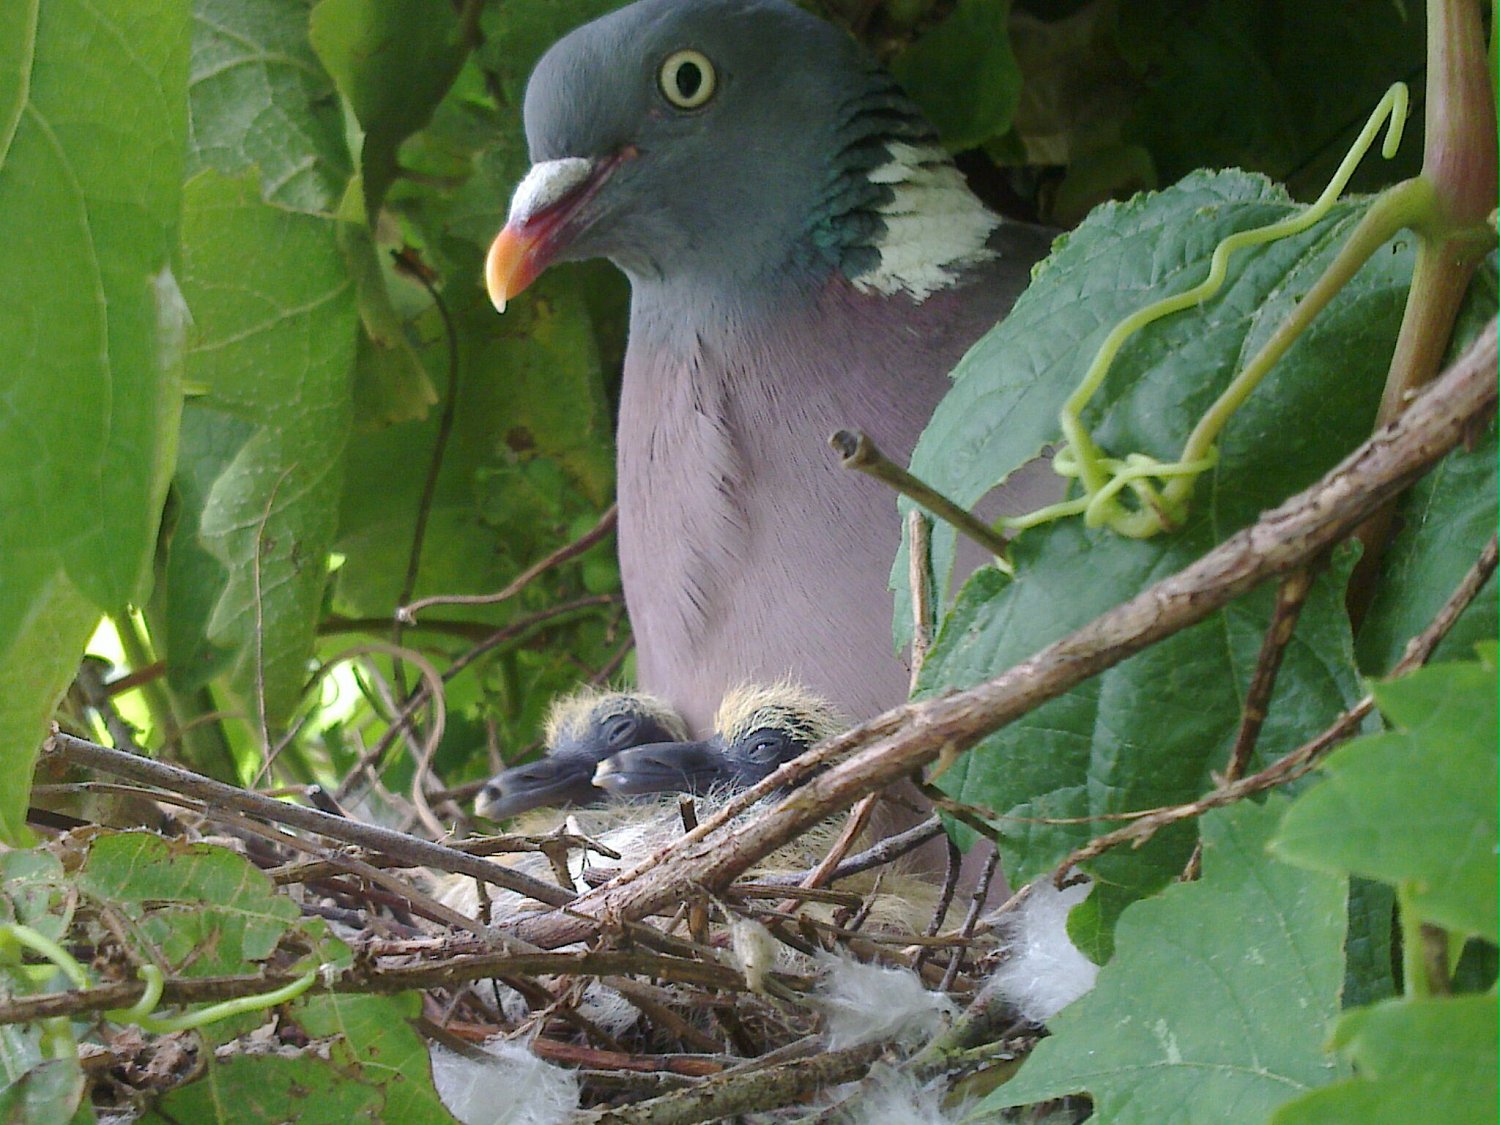 Samička chrání a zahřívá dvě mláďata na hnízdě, „Zdroj a licence“((Common Wood Pigeon with newly hatched young, Autor: Tjpayne, Dostupné z: https://commons.wikimedia.org/wiki/File:Common_Wood_Pigeon_with_newly_hatched_young.jpg [cit. 2016–06–23], CC BY-SA 3.0 Unported https://creativecommons.org/licenses/by-sa/3.0/deed.cs))